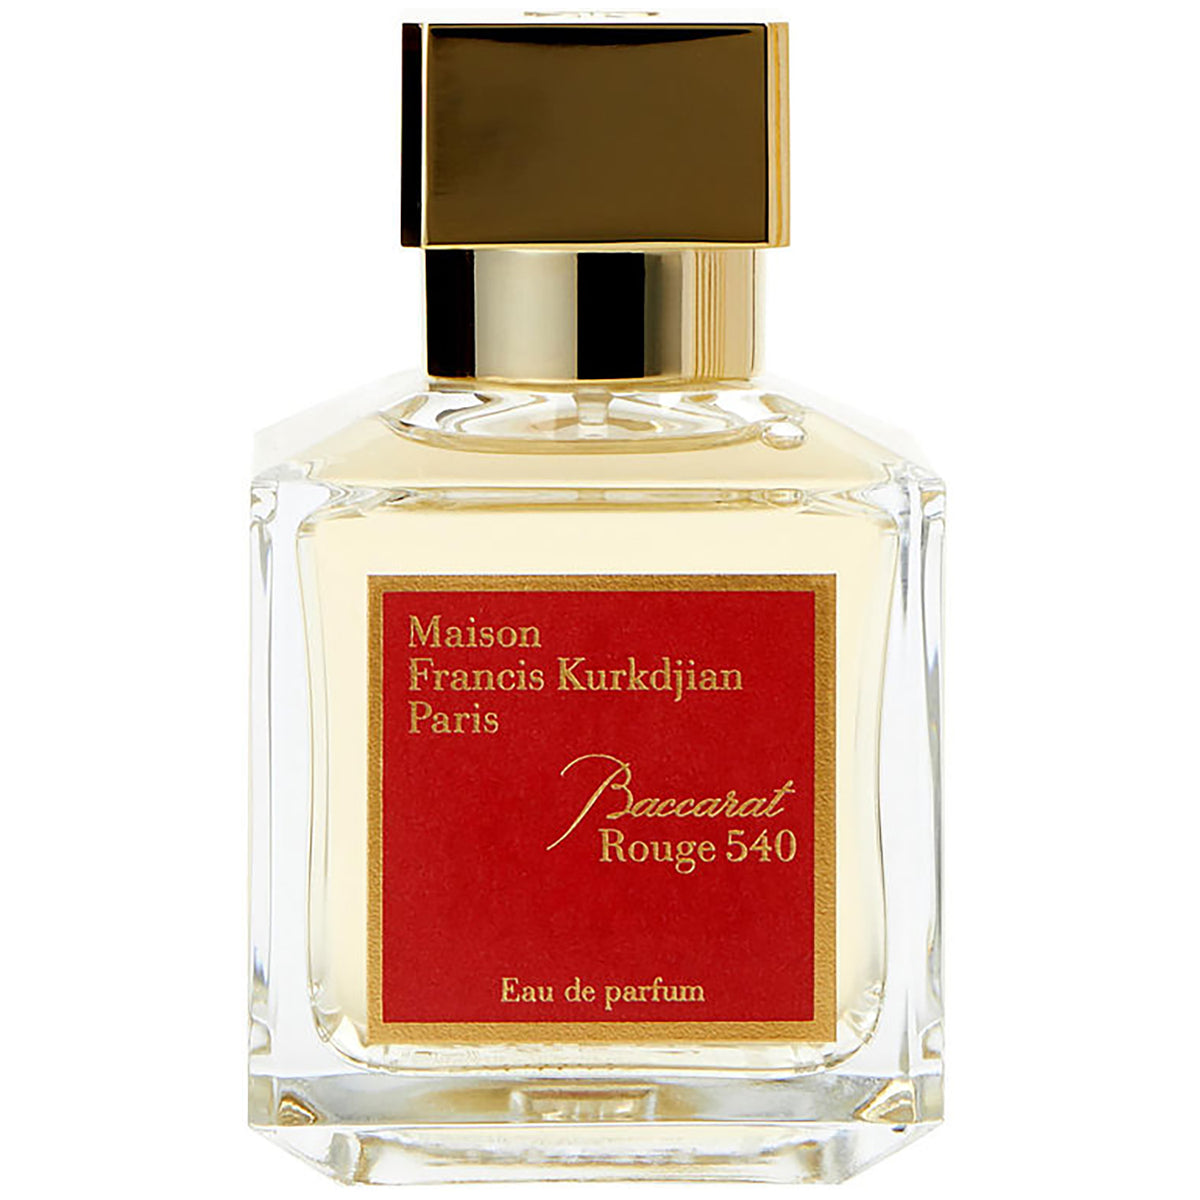 MAISON FRANCIS KURKDJIAN PARIS Baccarat Rouge 540 Eau de parfum